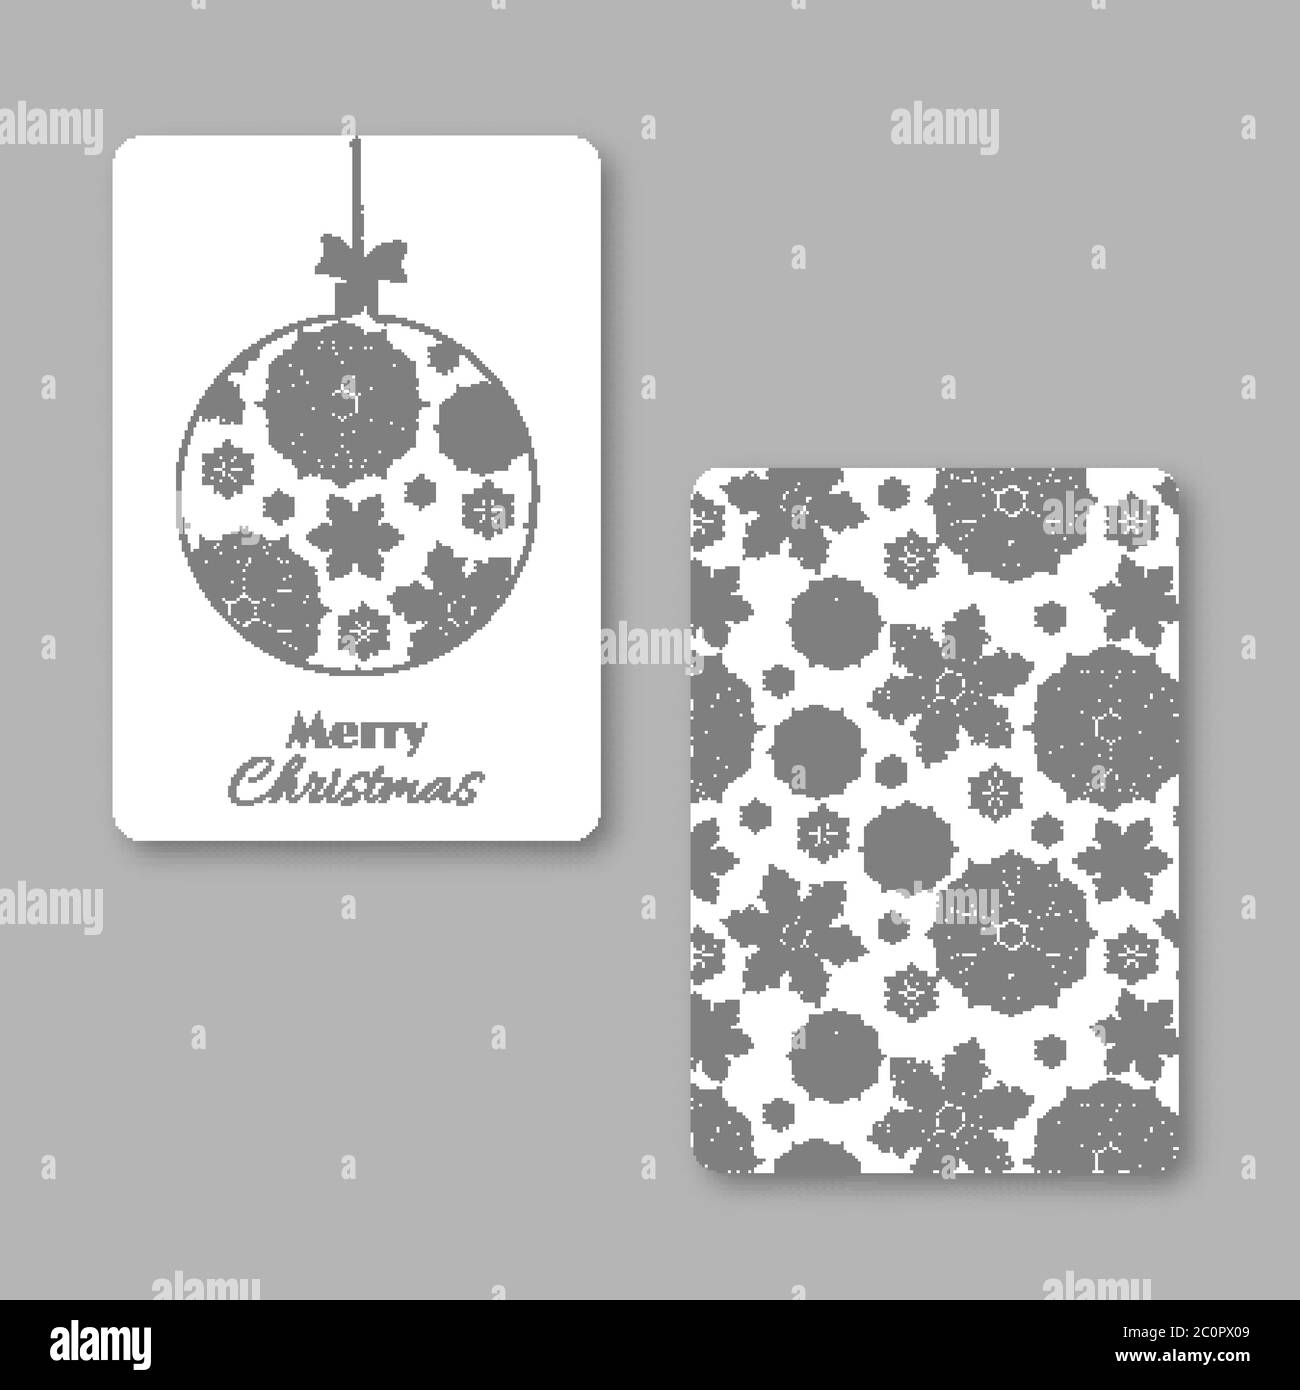 Weihnachten und Neujahr Visitenkarte mit weihnachtsschneeflockenball. Weiß und grau, Vintage dekorativen Stil. Vektorgrafik. Stock Vektor